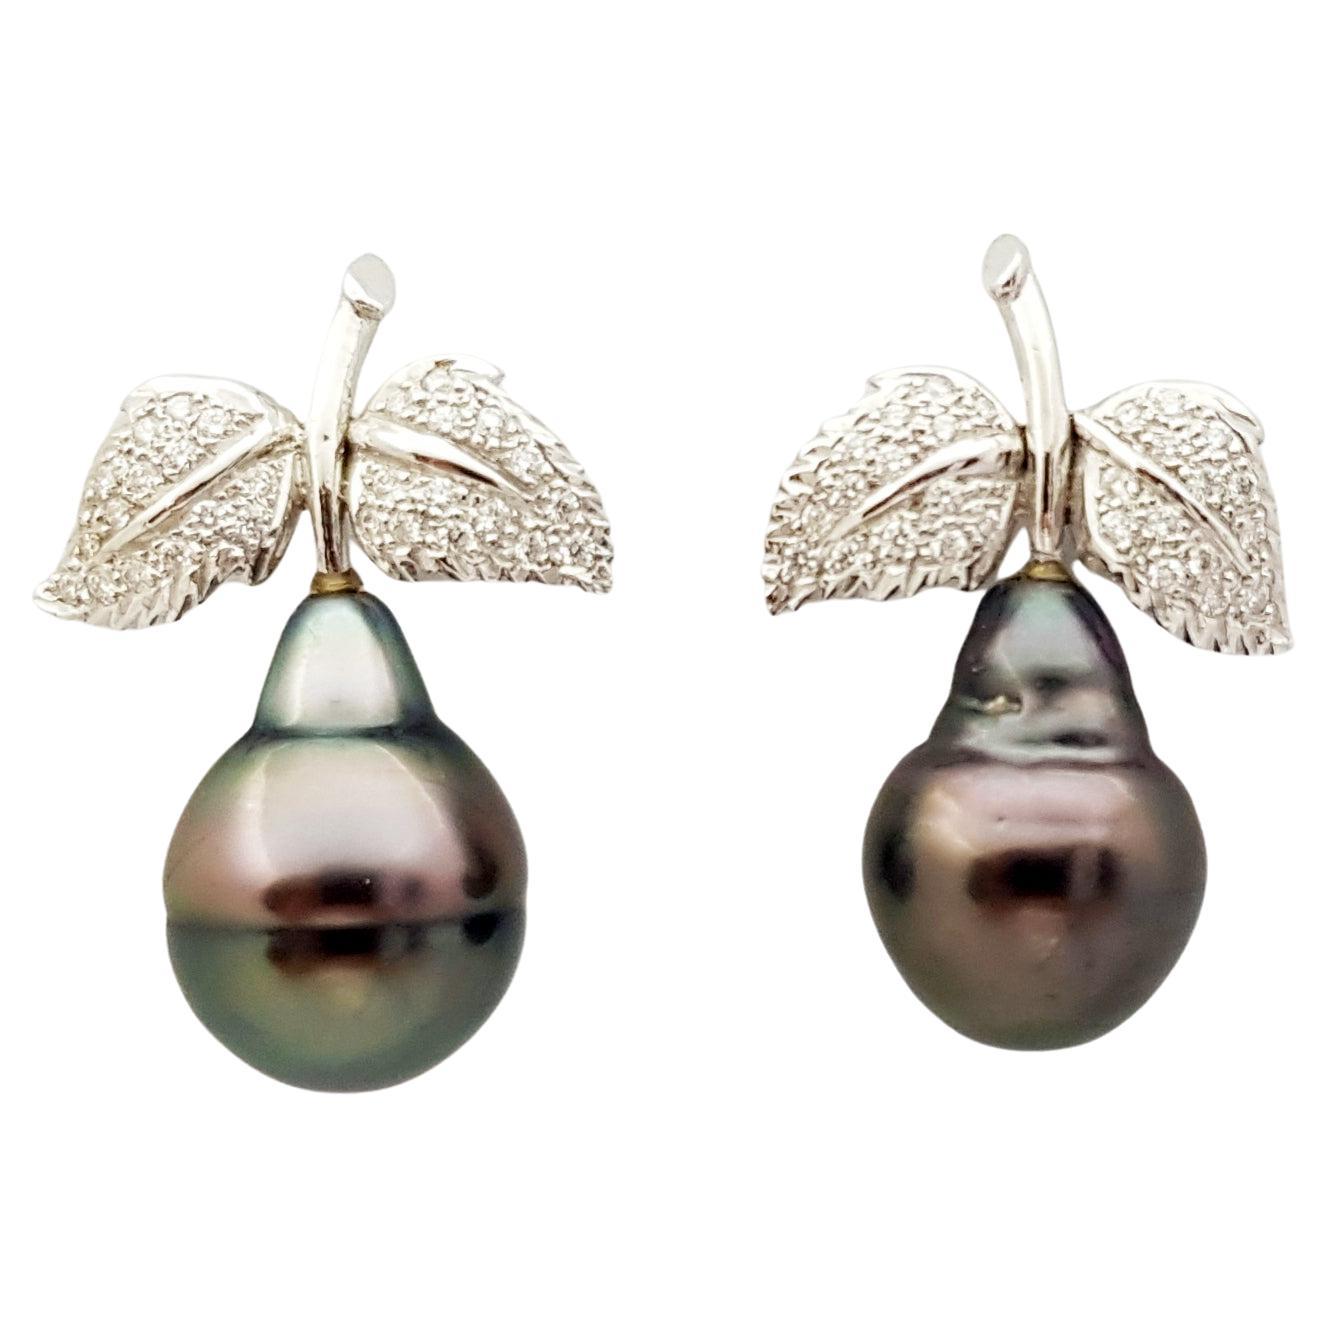 Südseeperlen-Ohrringe mit Diamanten in 18 Karat Weißgold-Fassung